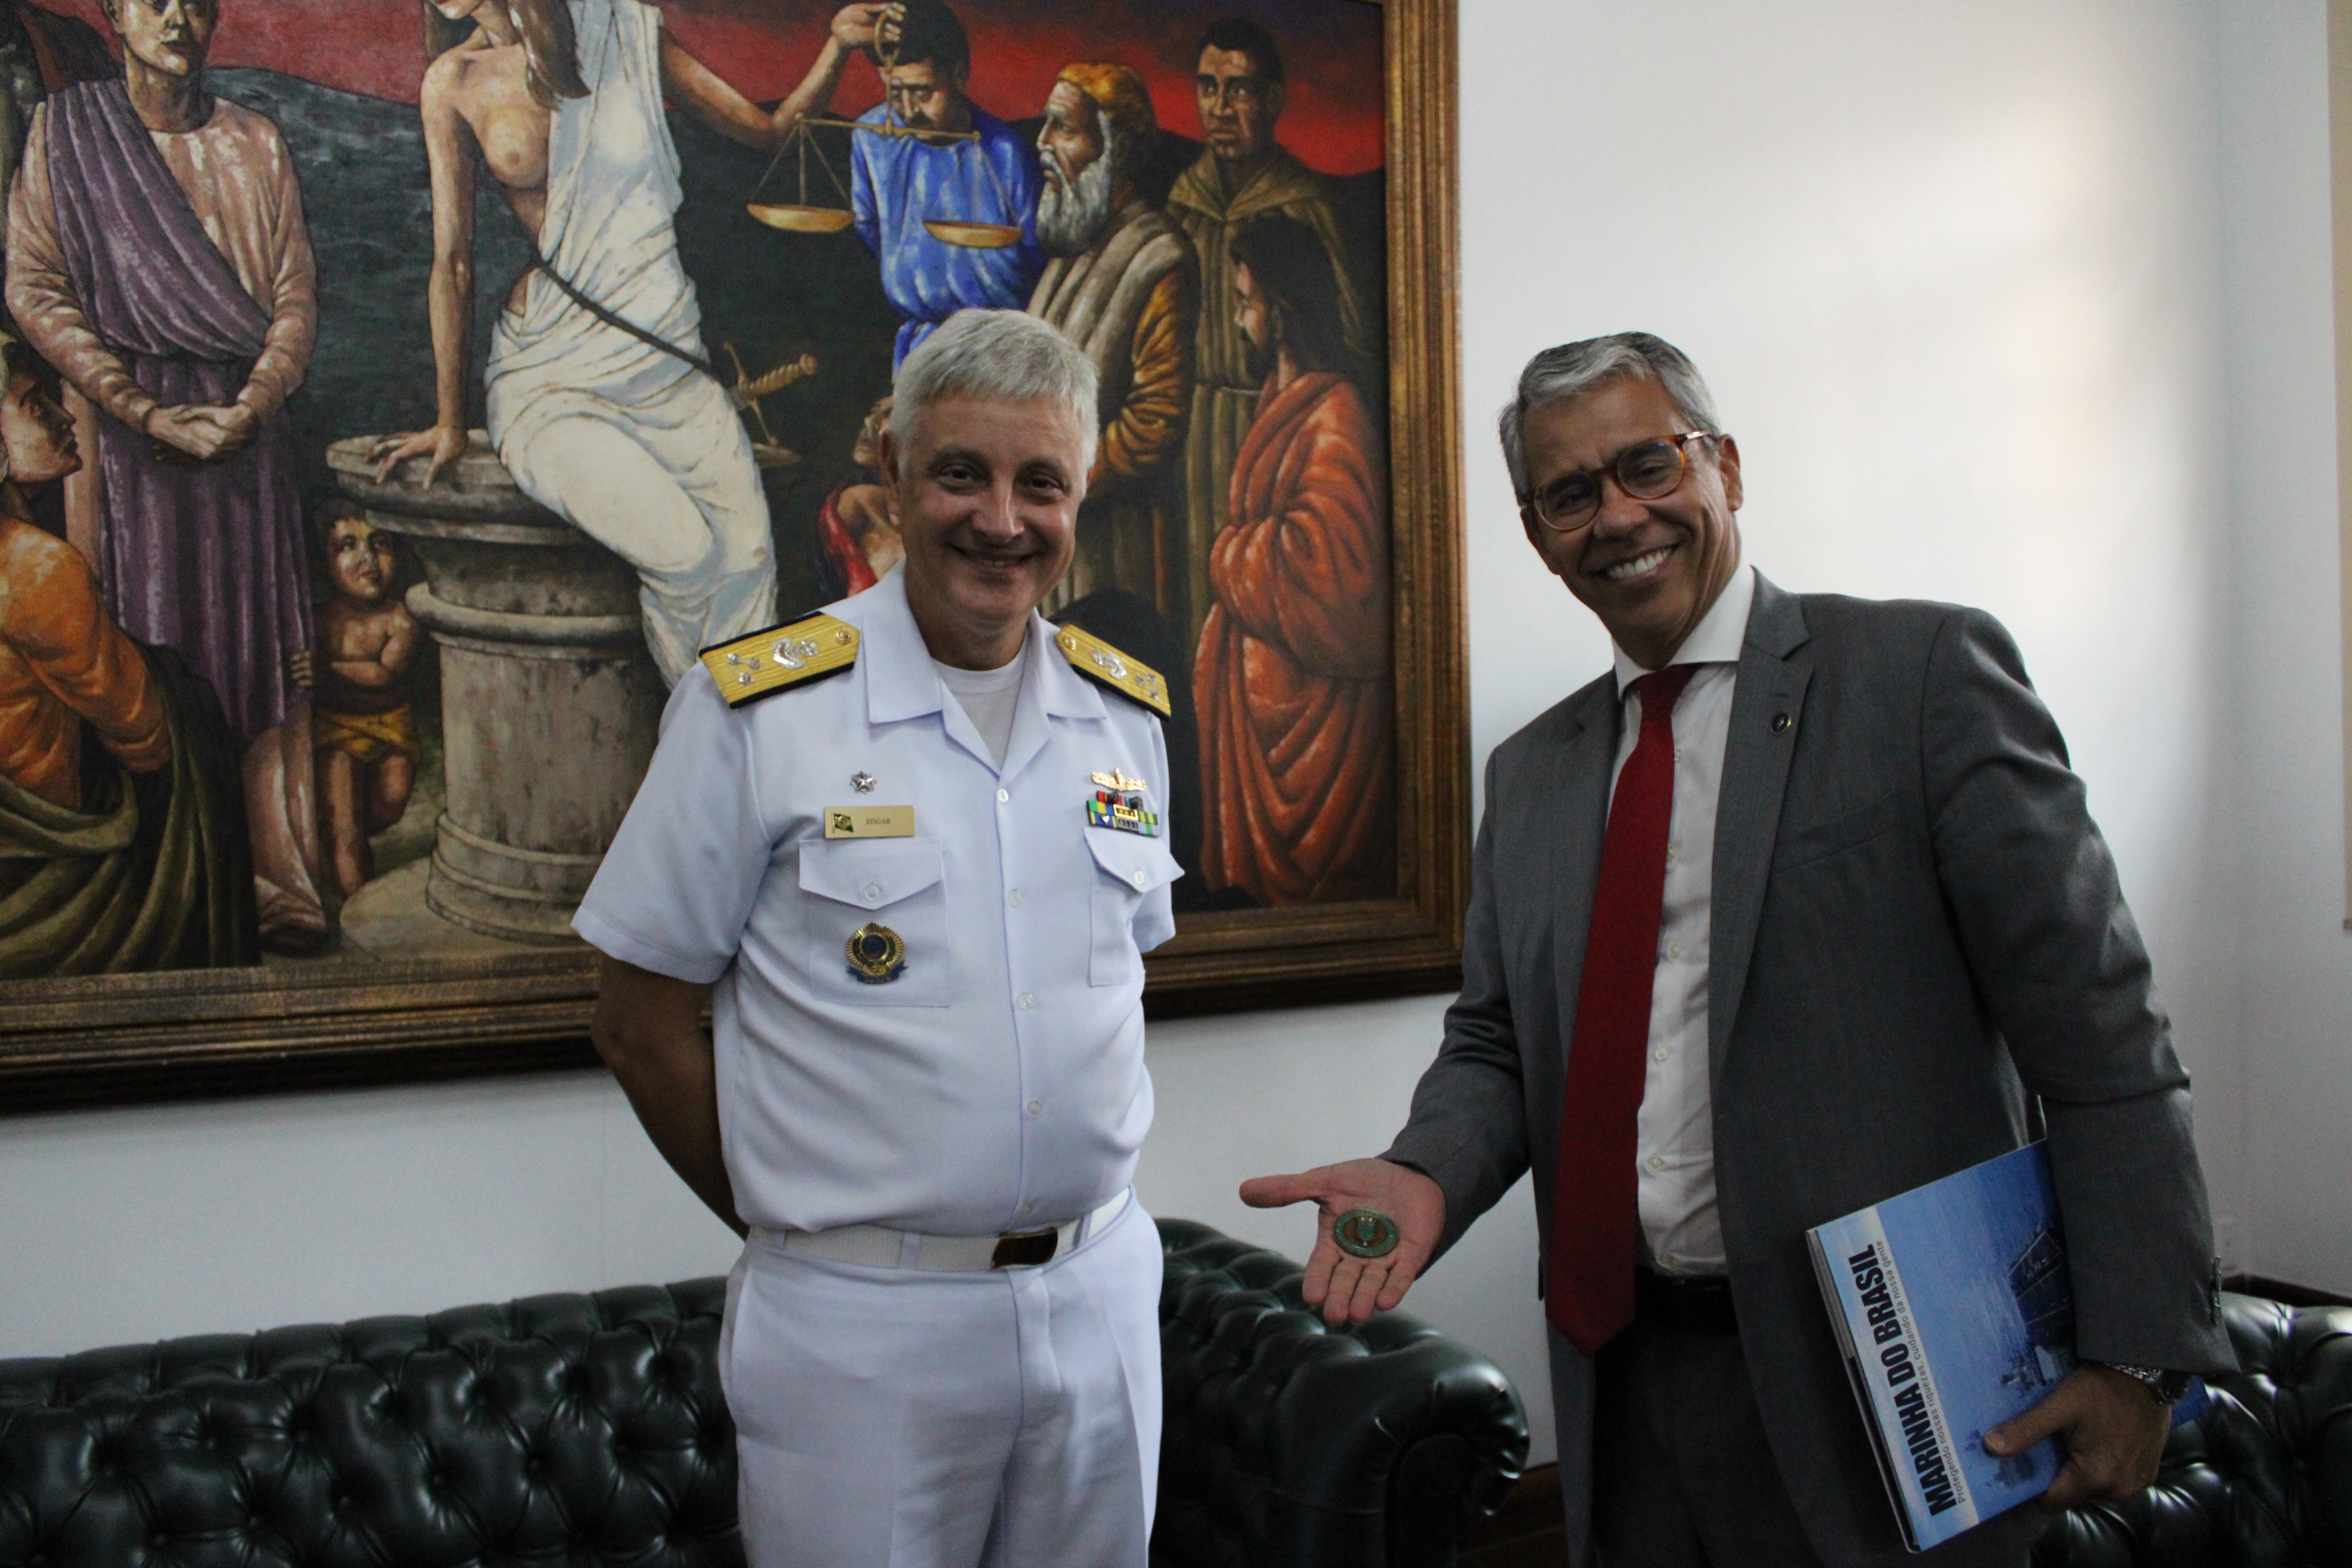 Presidente com a medalha na mão sorrindo, ao lado do vice-almirante de farda